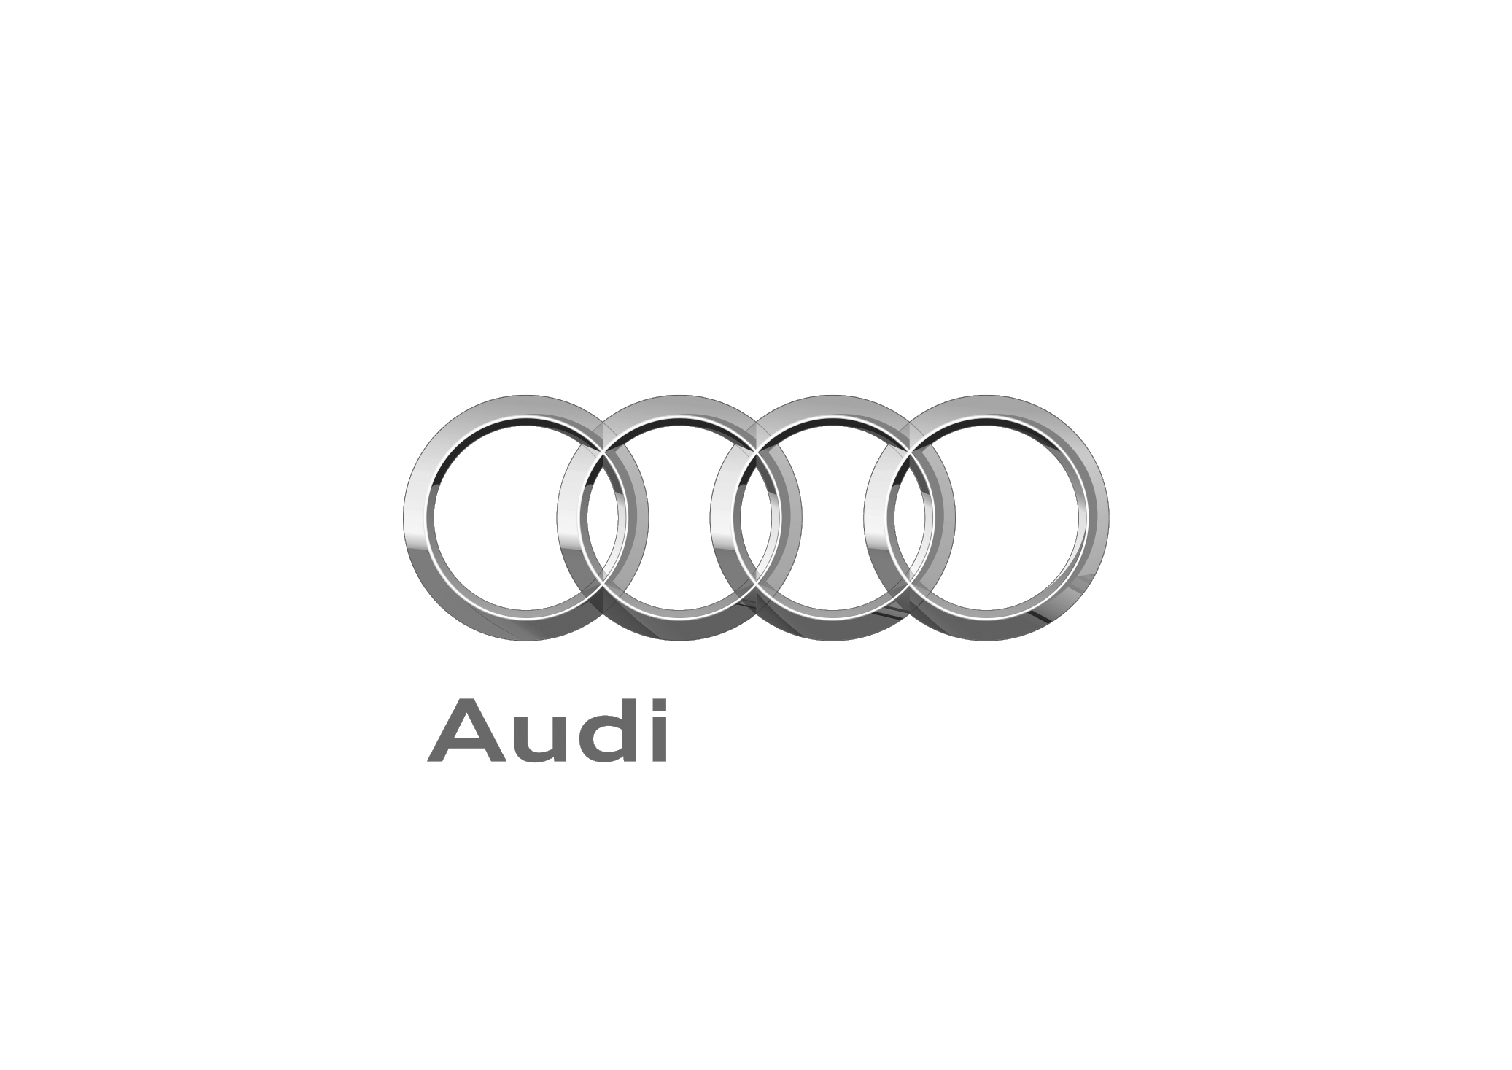 Audi-01.jpg